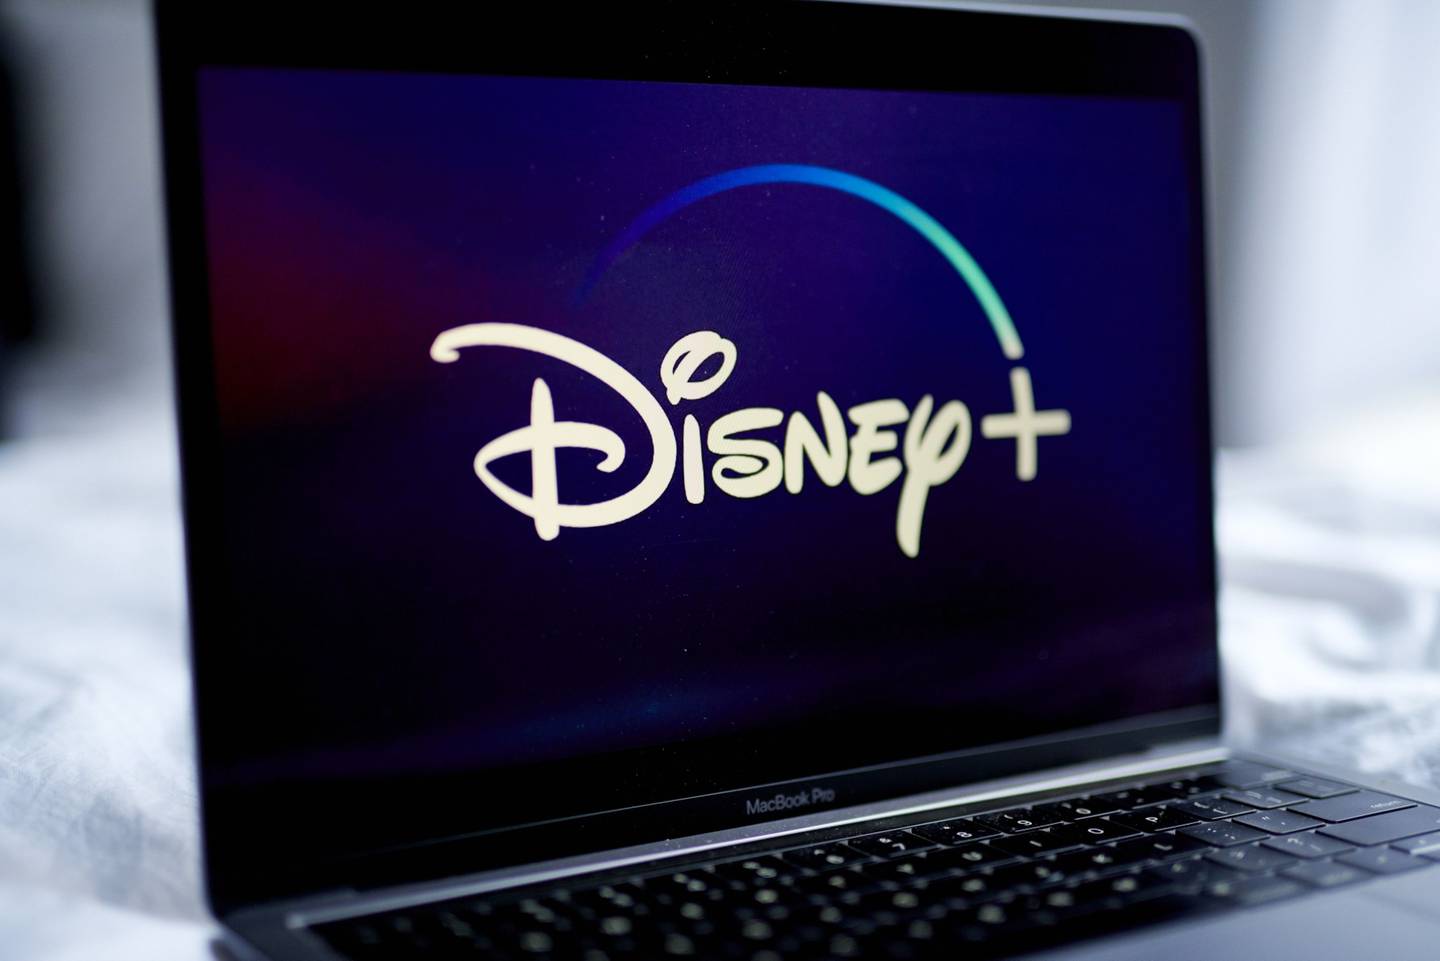 El logo de Disney+ en un ordenador portátil arreglado en Nueva York, EE. UU., el miércoles 18 de noviembre de 2020. Aunque el titán del entretenimiento aún se tambalea por la pandemia, el crecimiento de Disney+ ha suavizado el golpe. Fotógrafo: Gabby Jones/Bloomberg
dfd